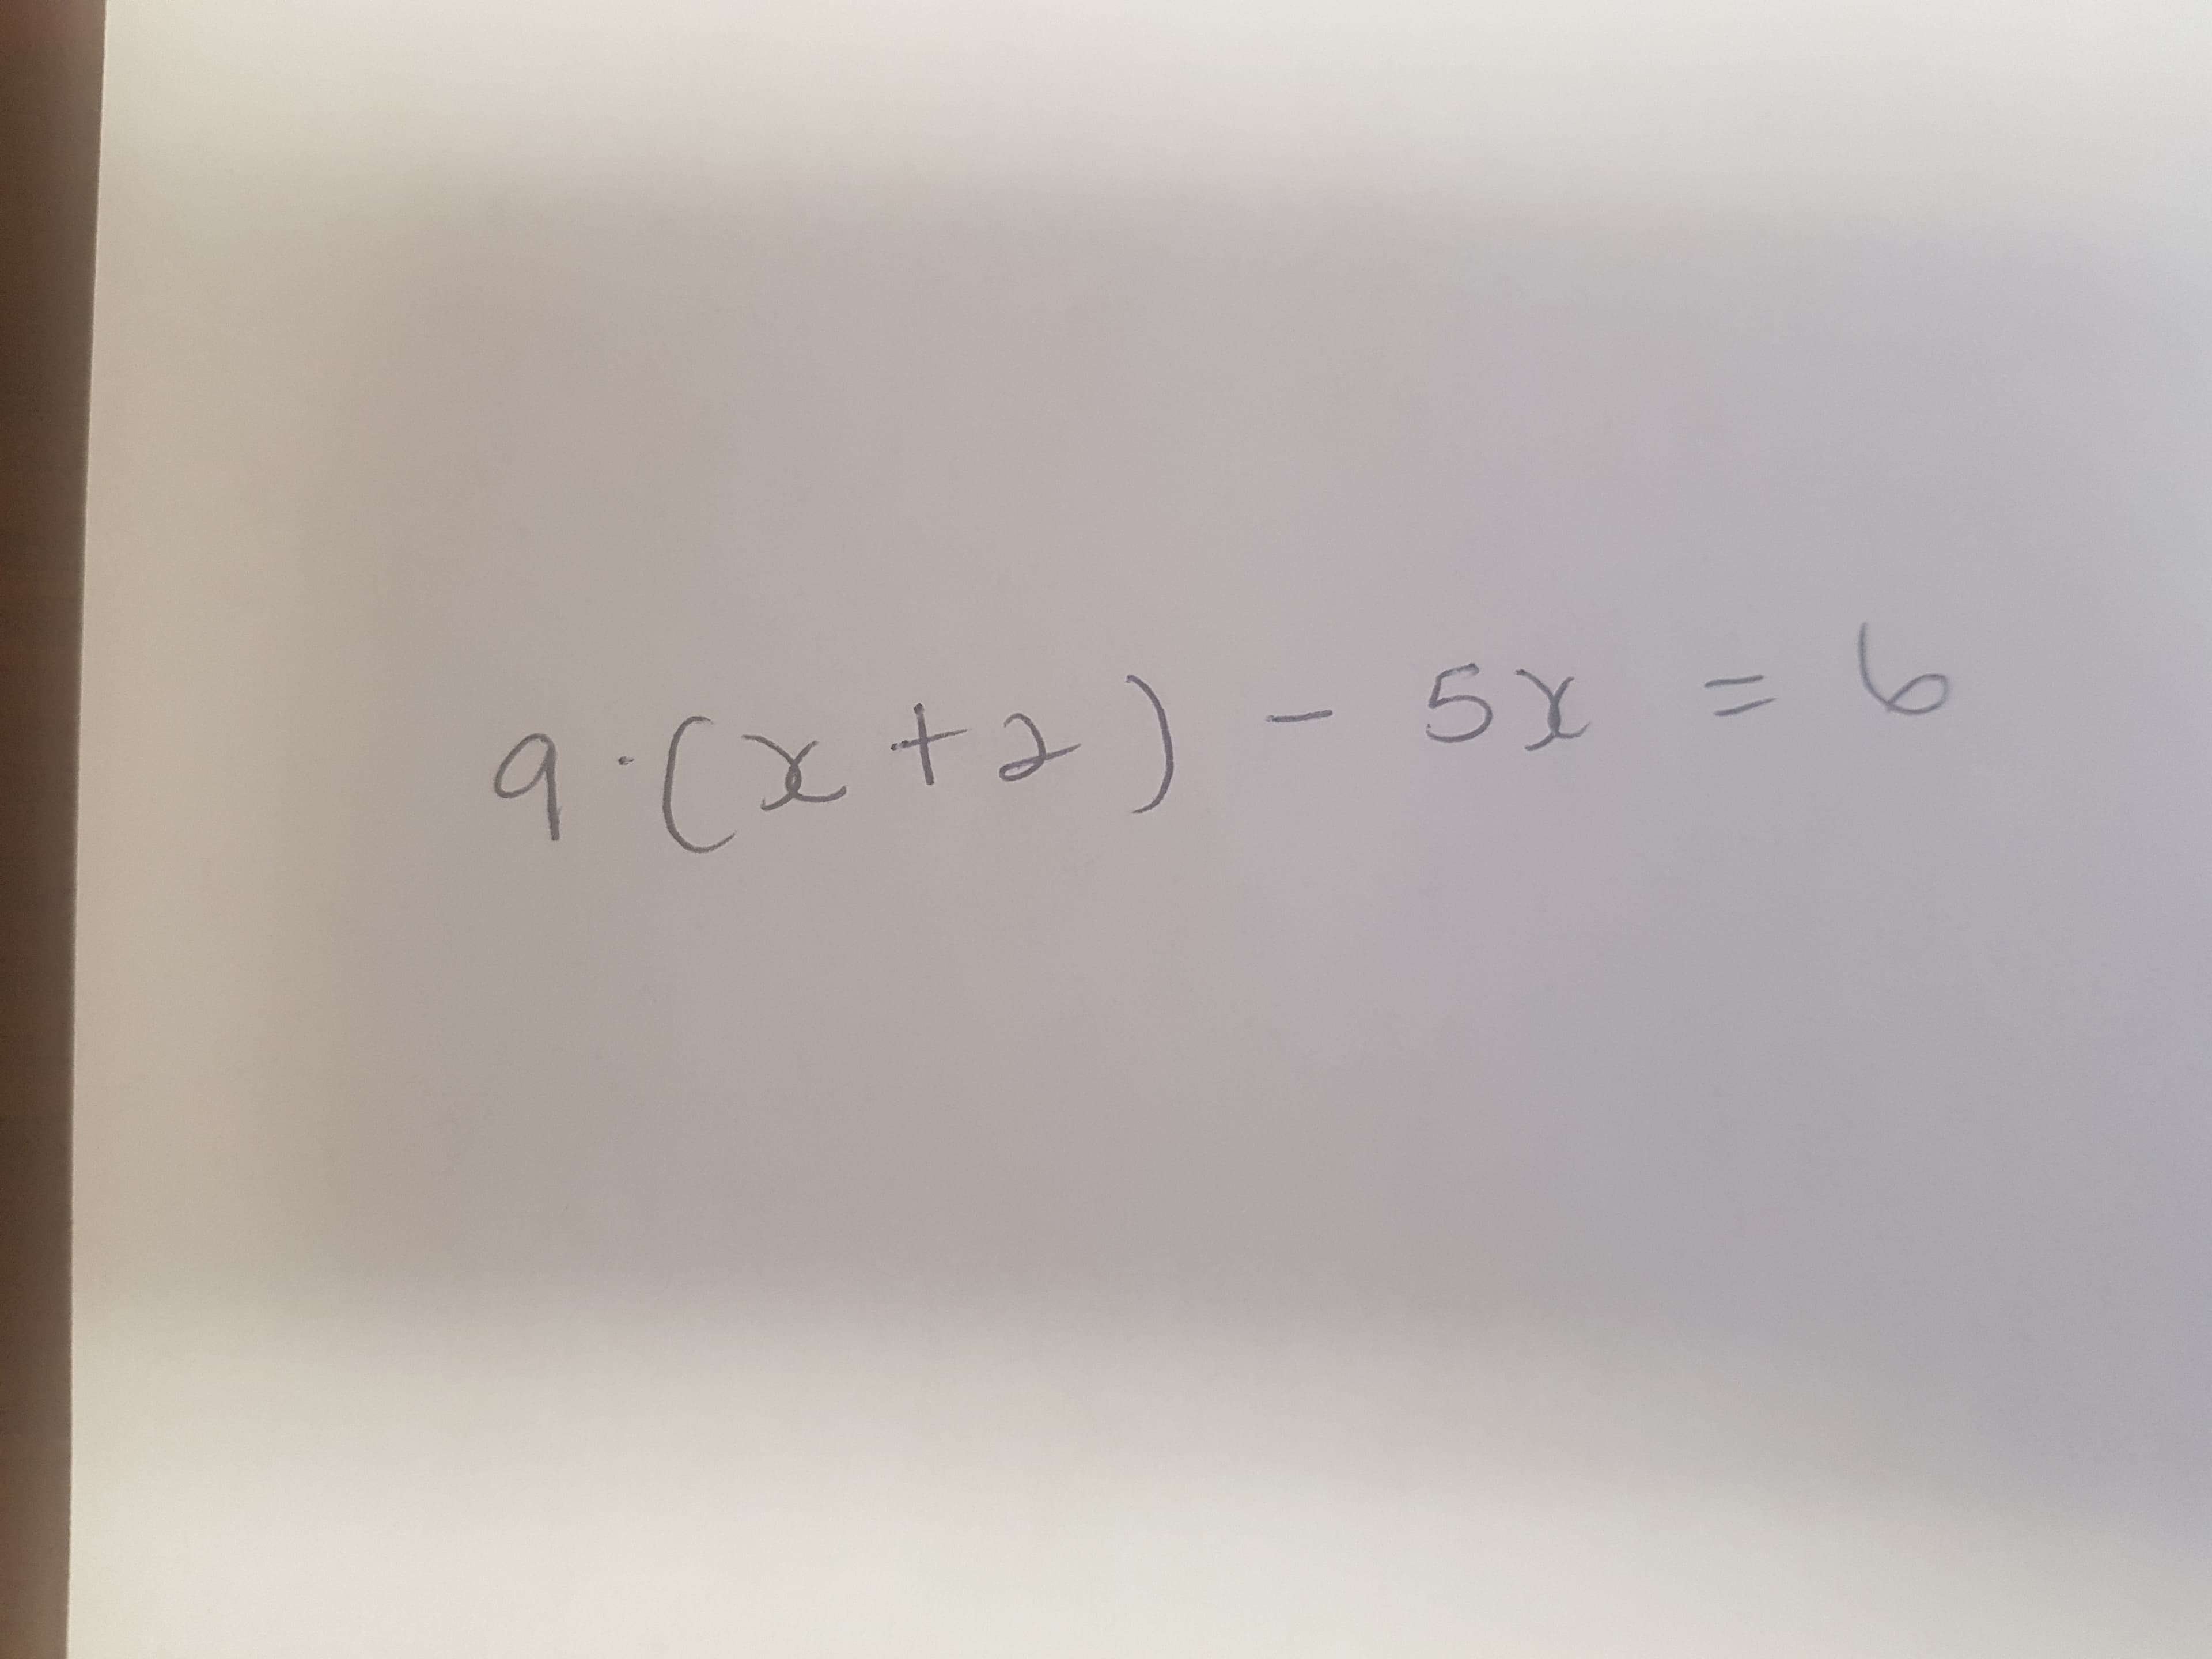 9:(x+2)- 5Y = 6
%3D
11
